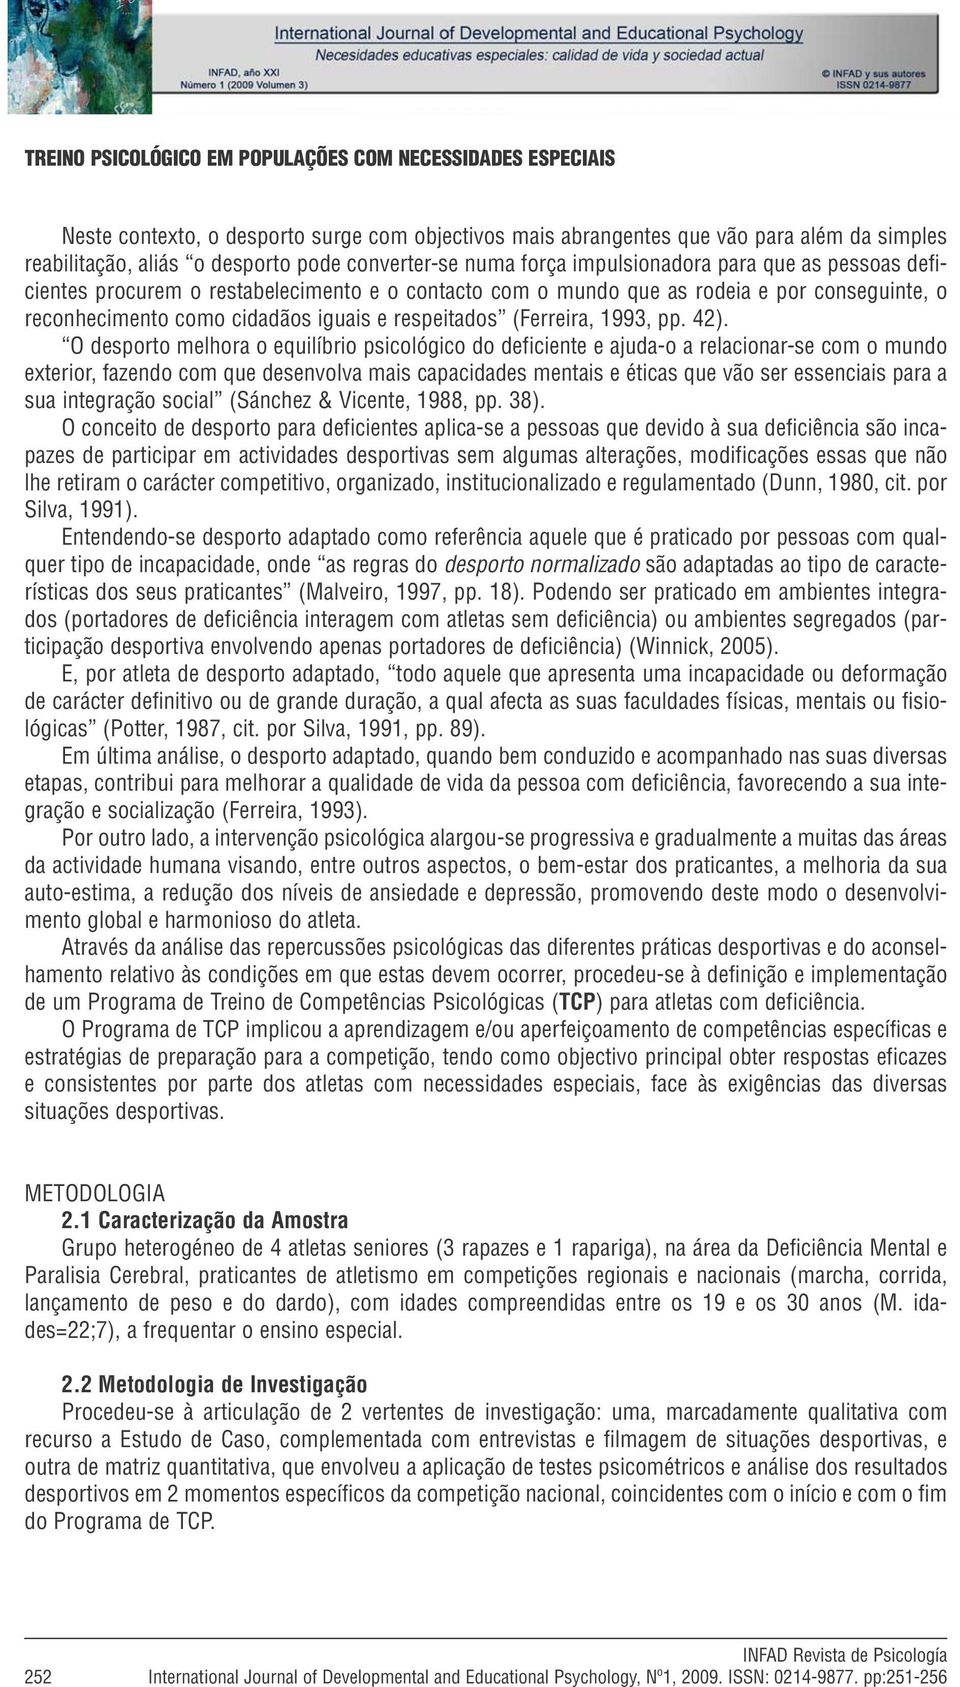 respeitados (Ferreira, 1993, pp. 42).